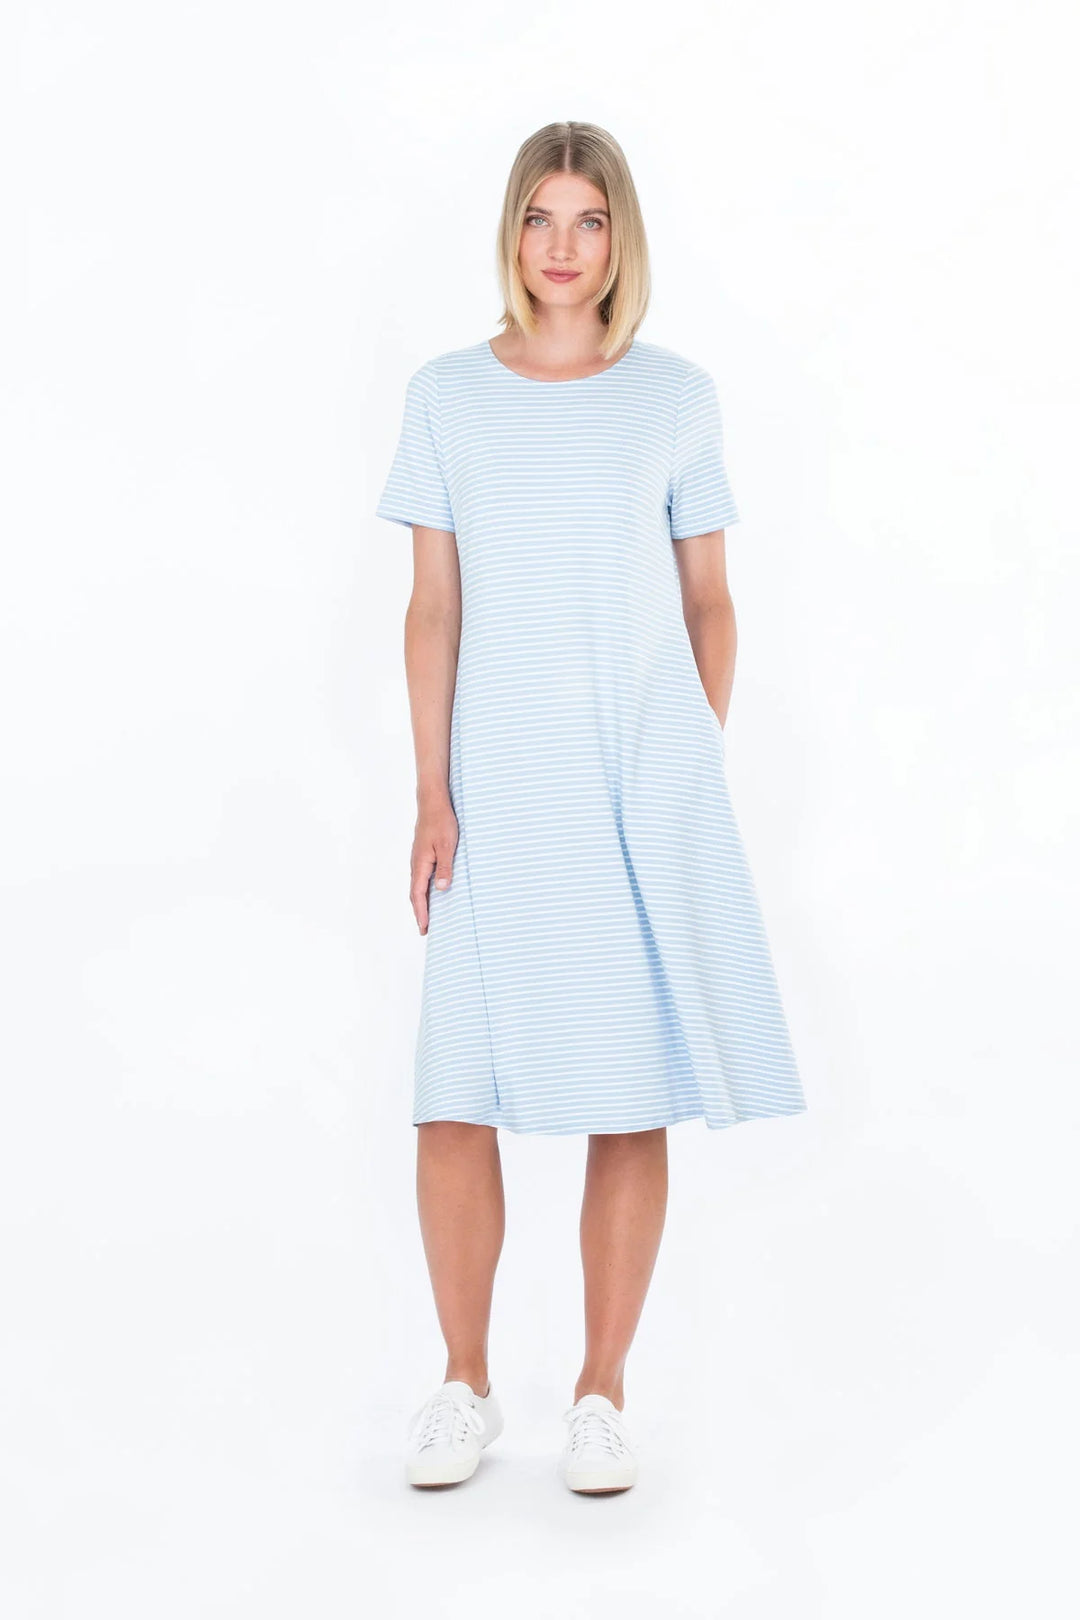 Sotka Viscose Jersey  Short Sleeve Stripe Dress, Blue/ White